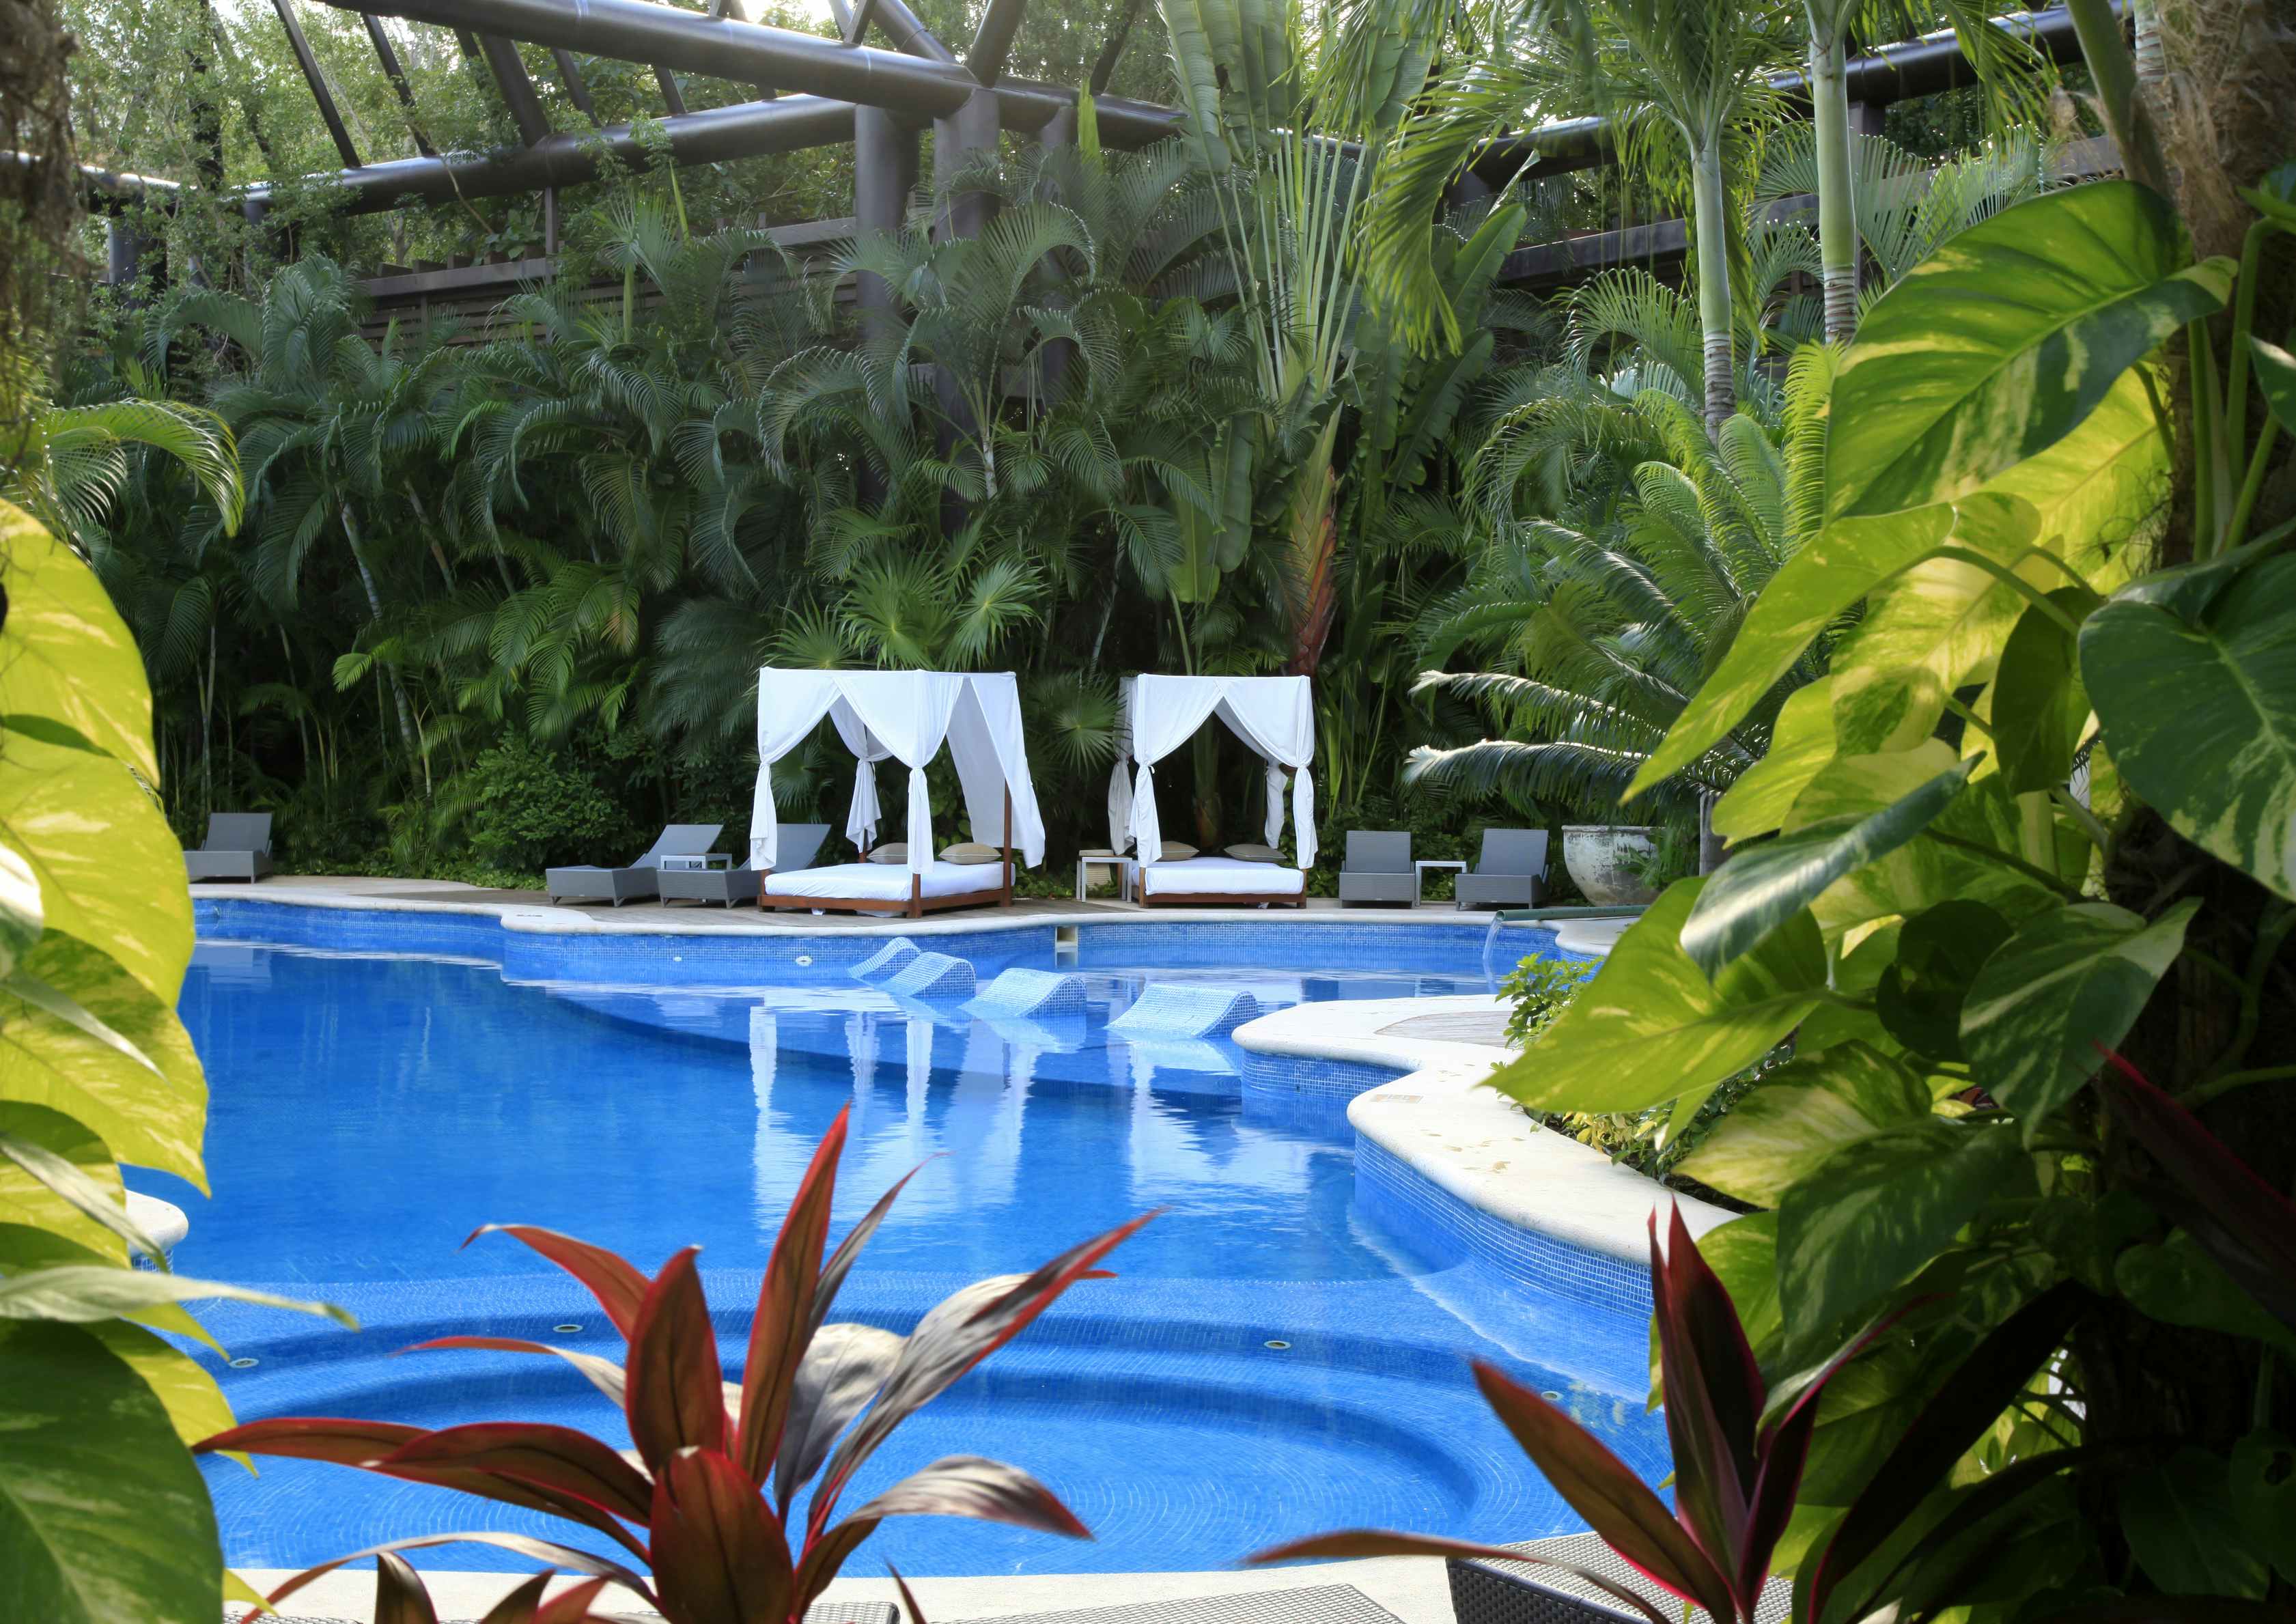 Vidanta Grand Mayan resort pool and cabanas